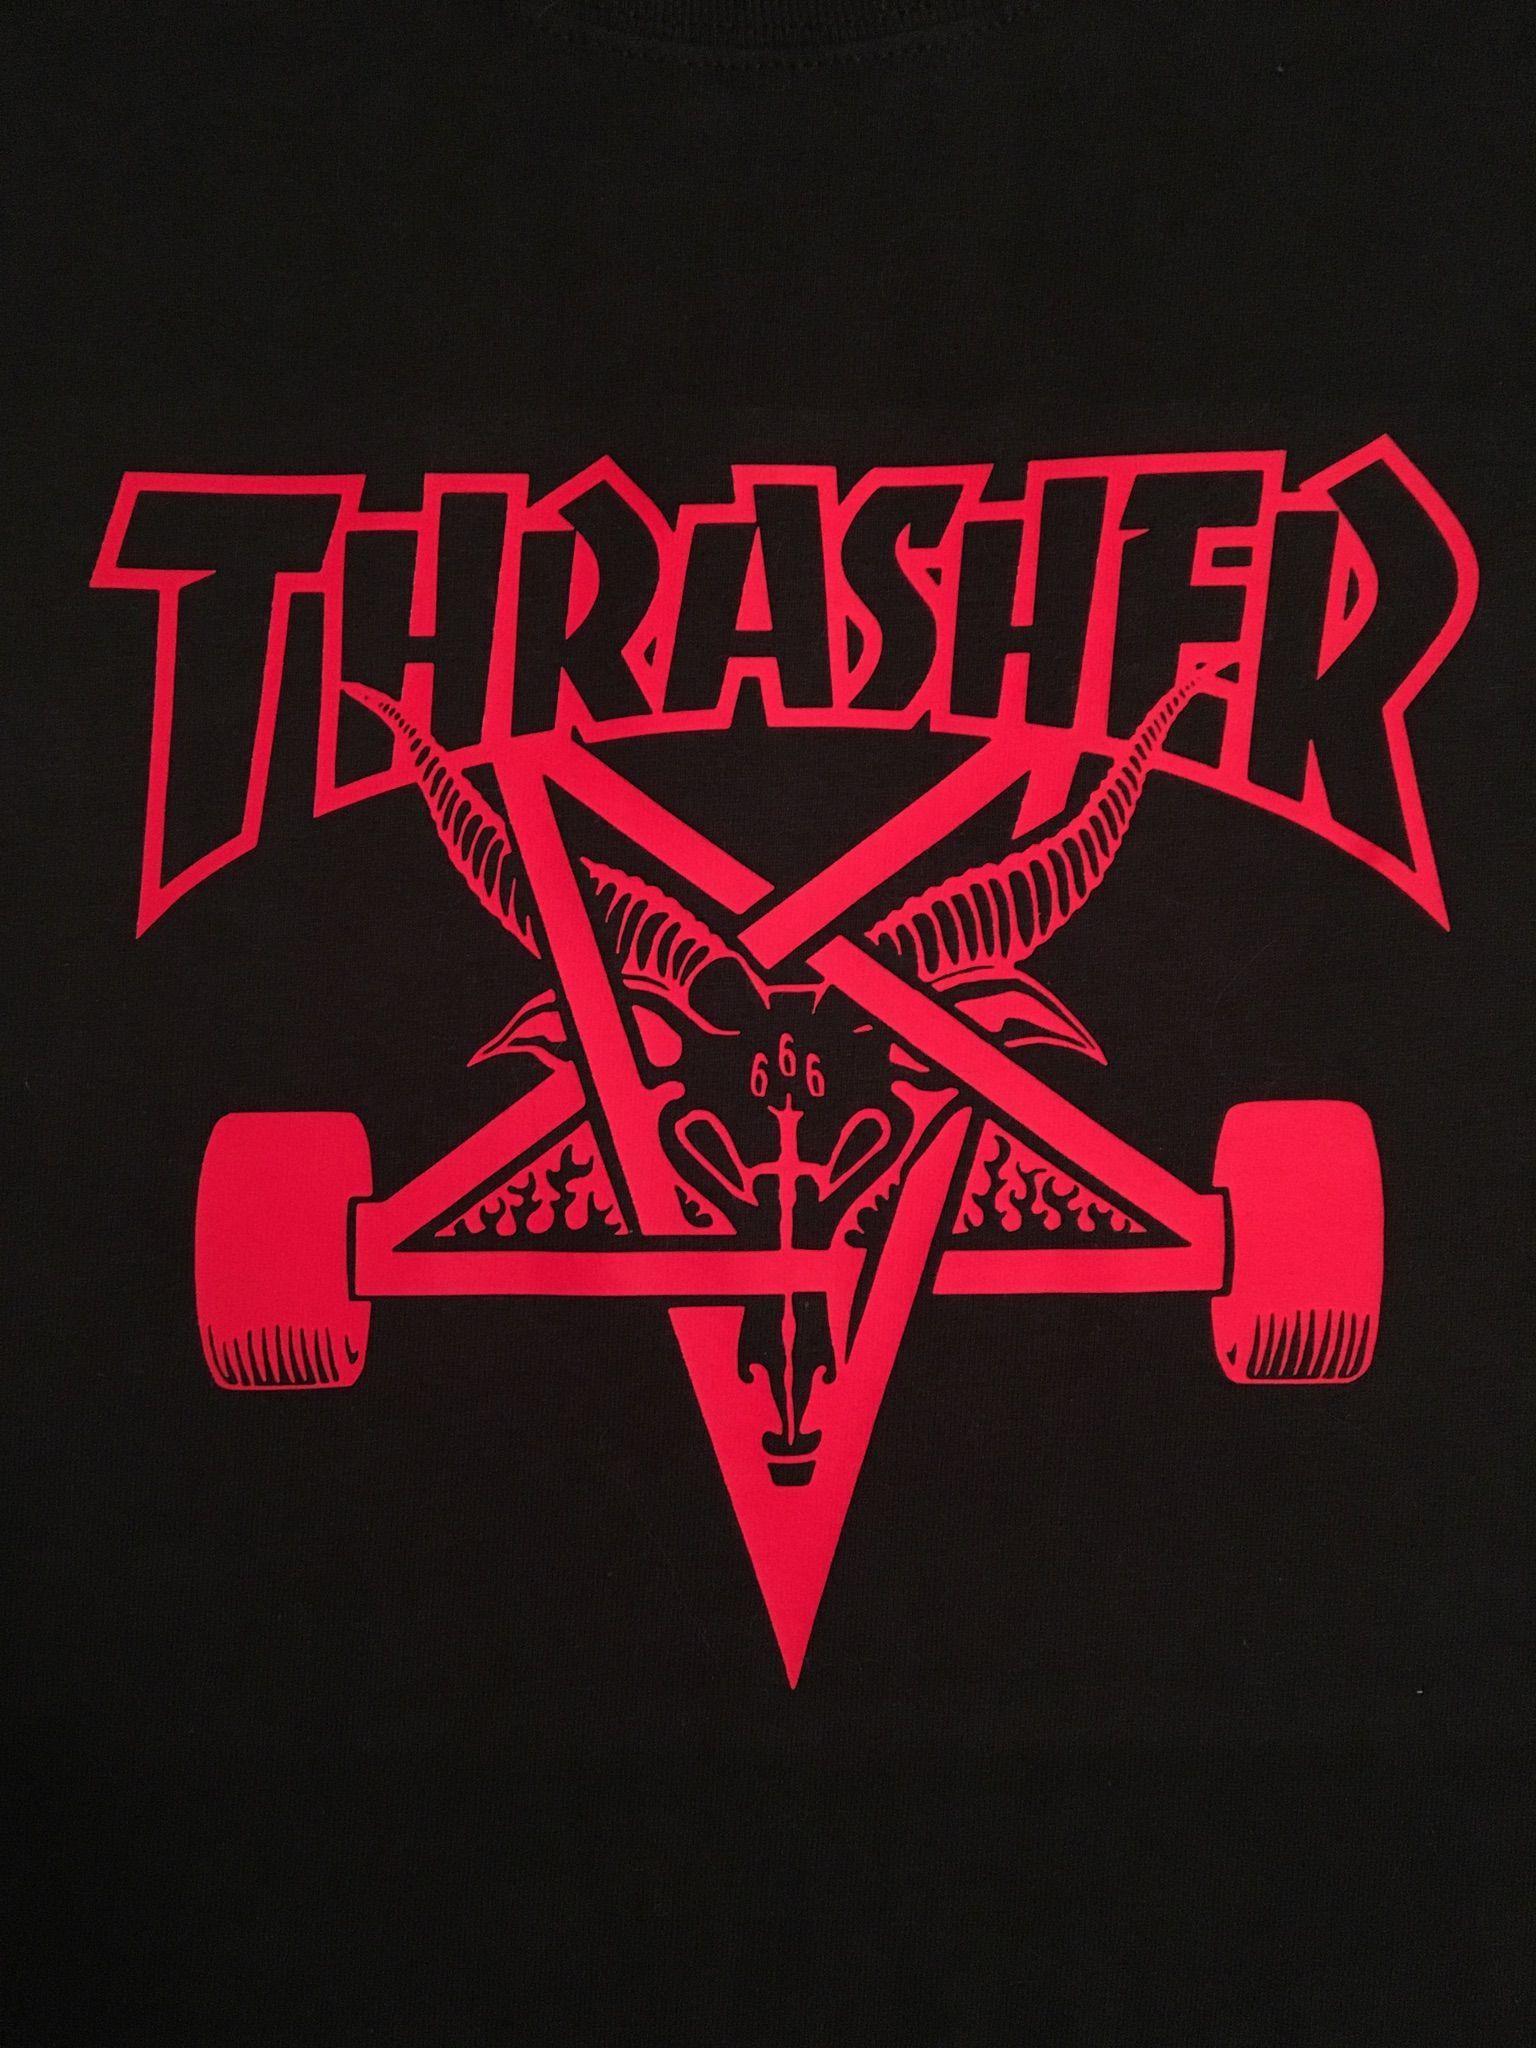 Neon Thrasher Goat Logo - Thrasher Skateboard Magazine, Skate Goat. DIY shirts in 2019